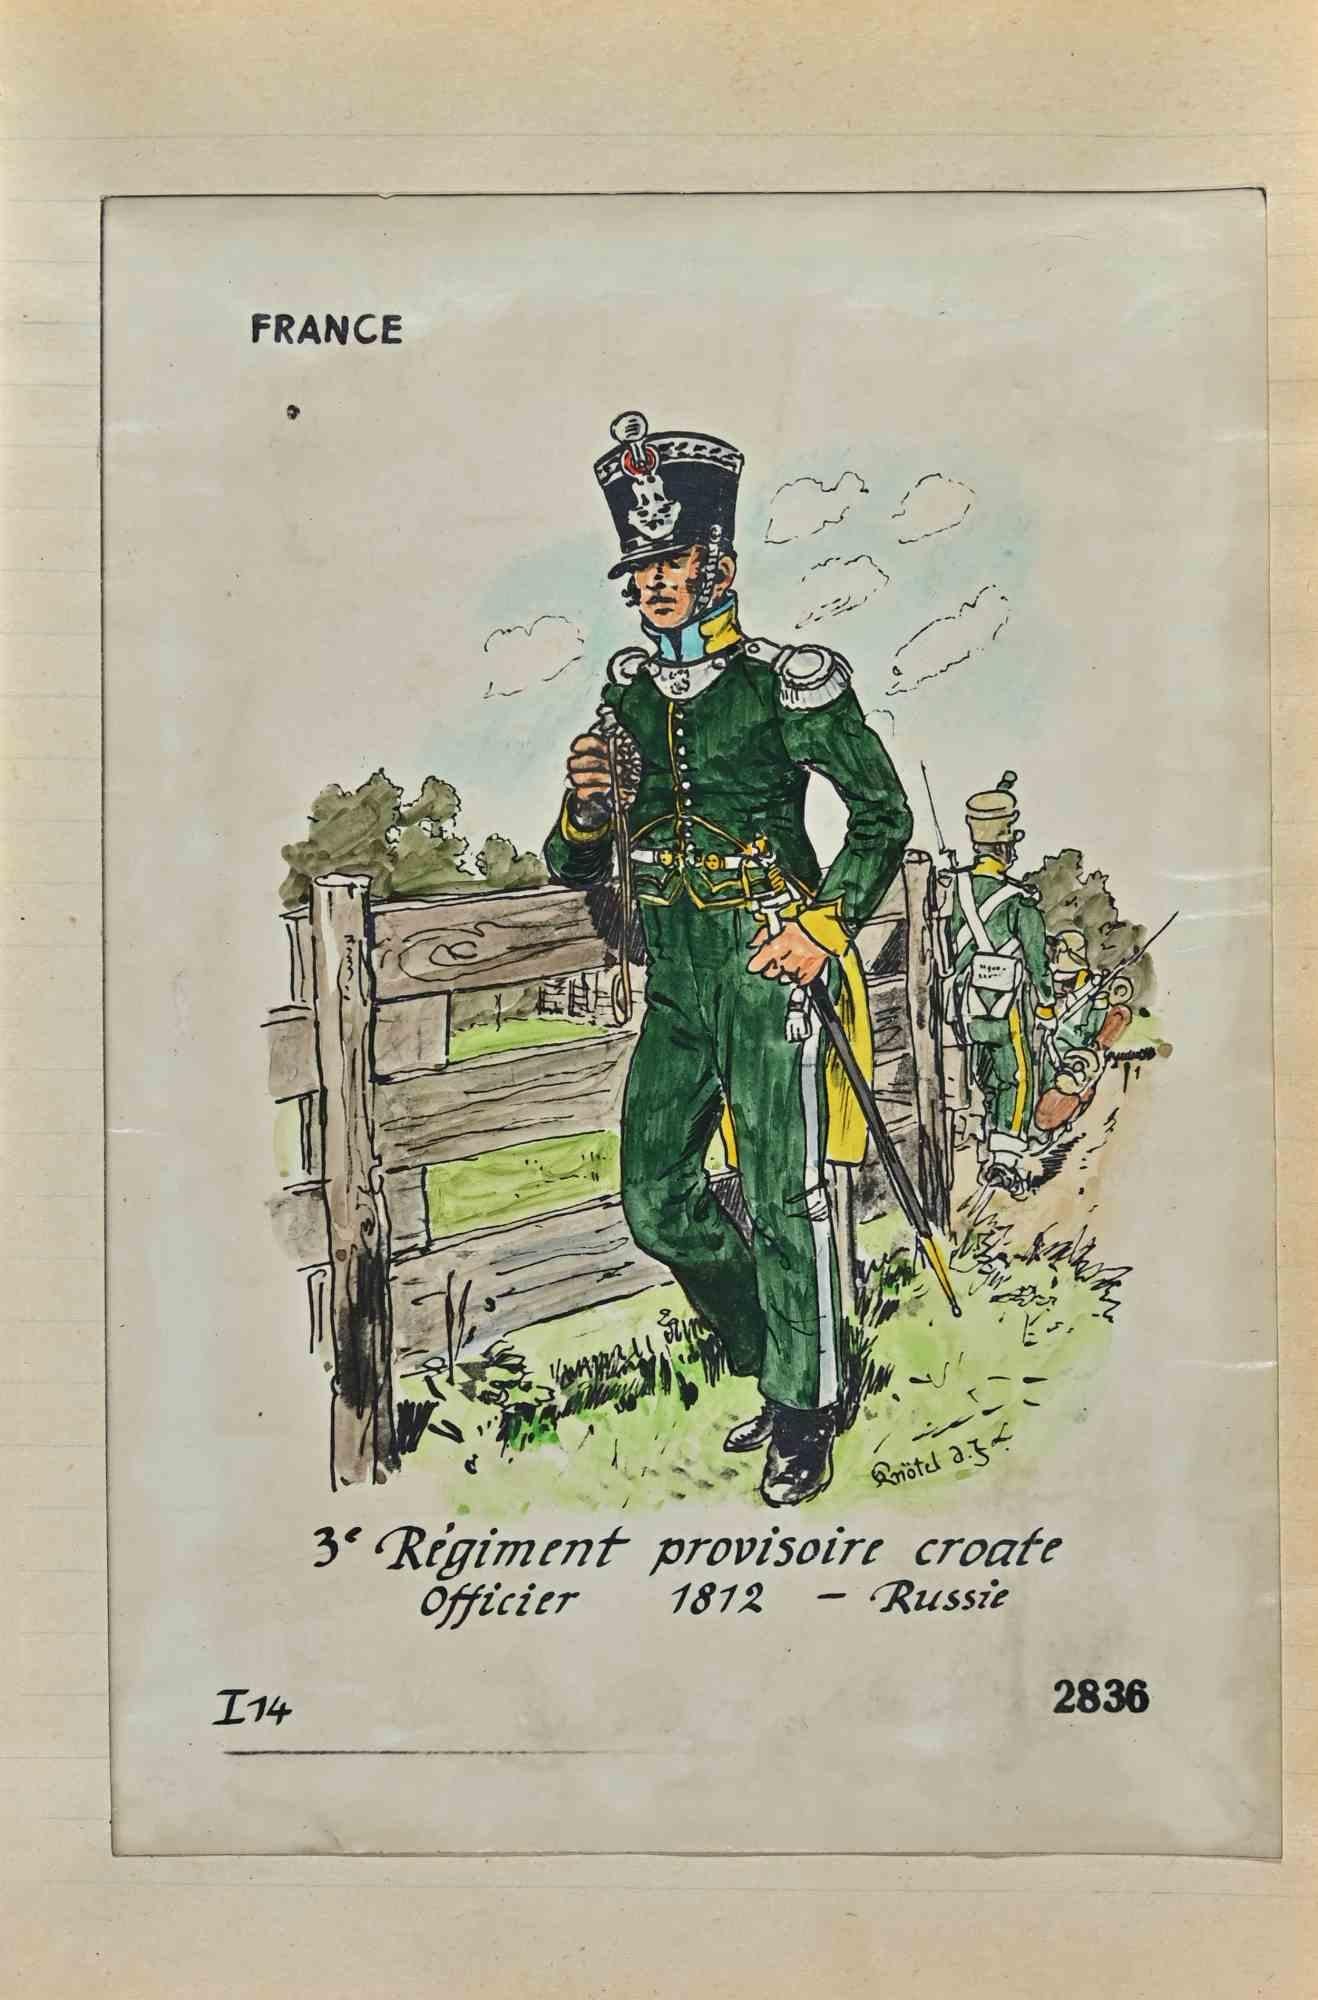 Regiment Provisoire Croate ist eine Originalzeichnung in Tusche und Aquarell von Herbert Knotel aus den 1930/40er Jahren.

Guter Zustand, außer dass er gealtert ist.

Das Kunstwerk wird durch starke Linien in ausgewogenen Verhältnissen